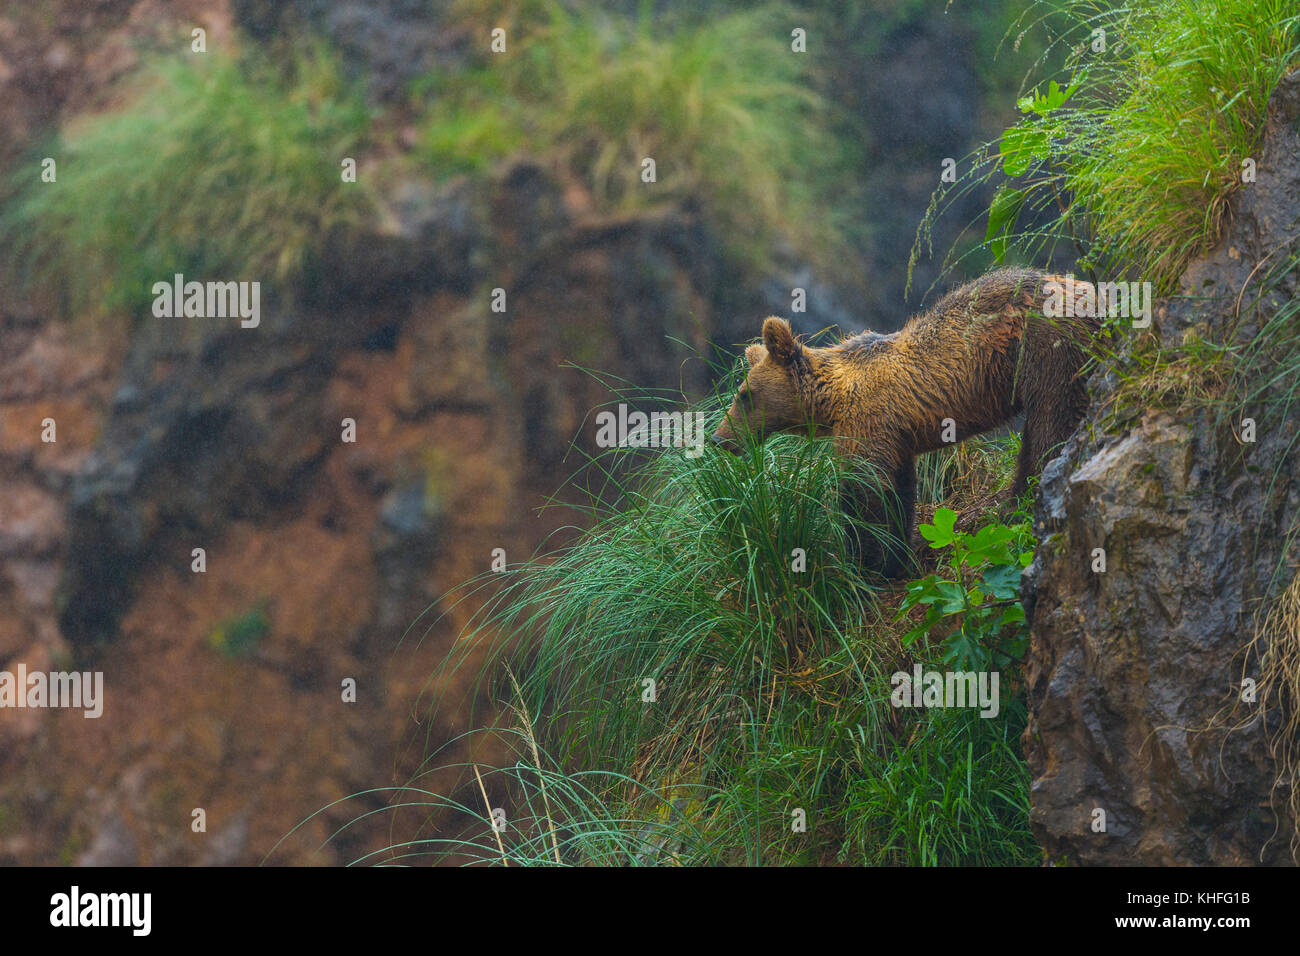 Brown bear (Ursus arctos) Stock Photo